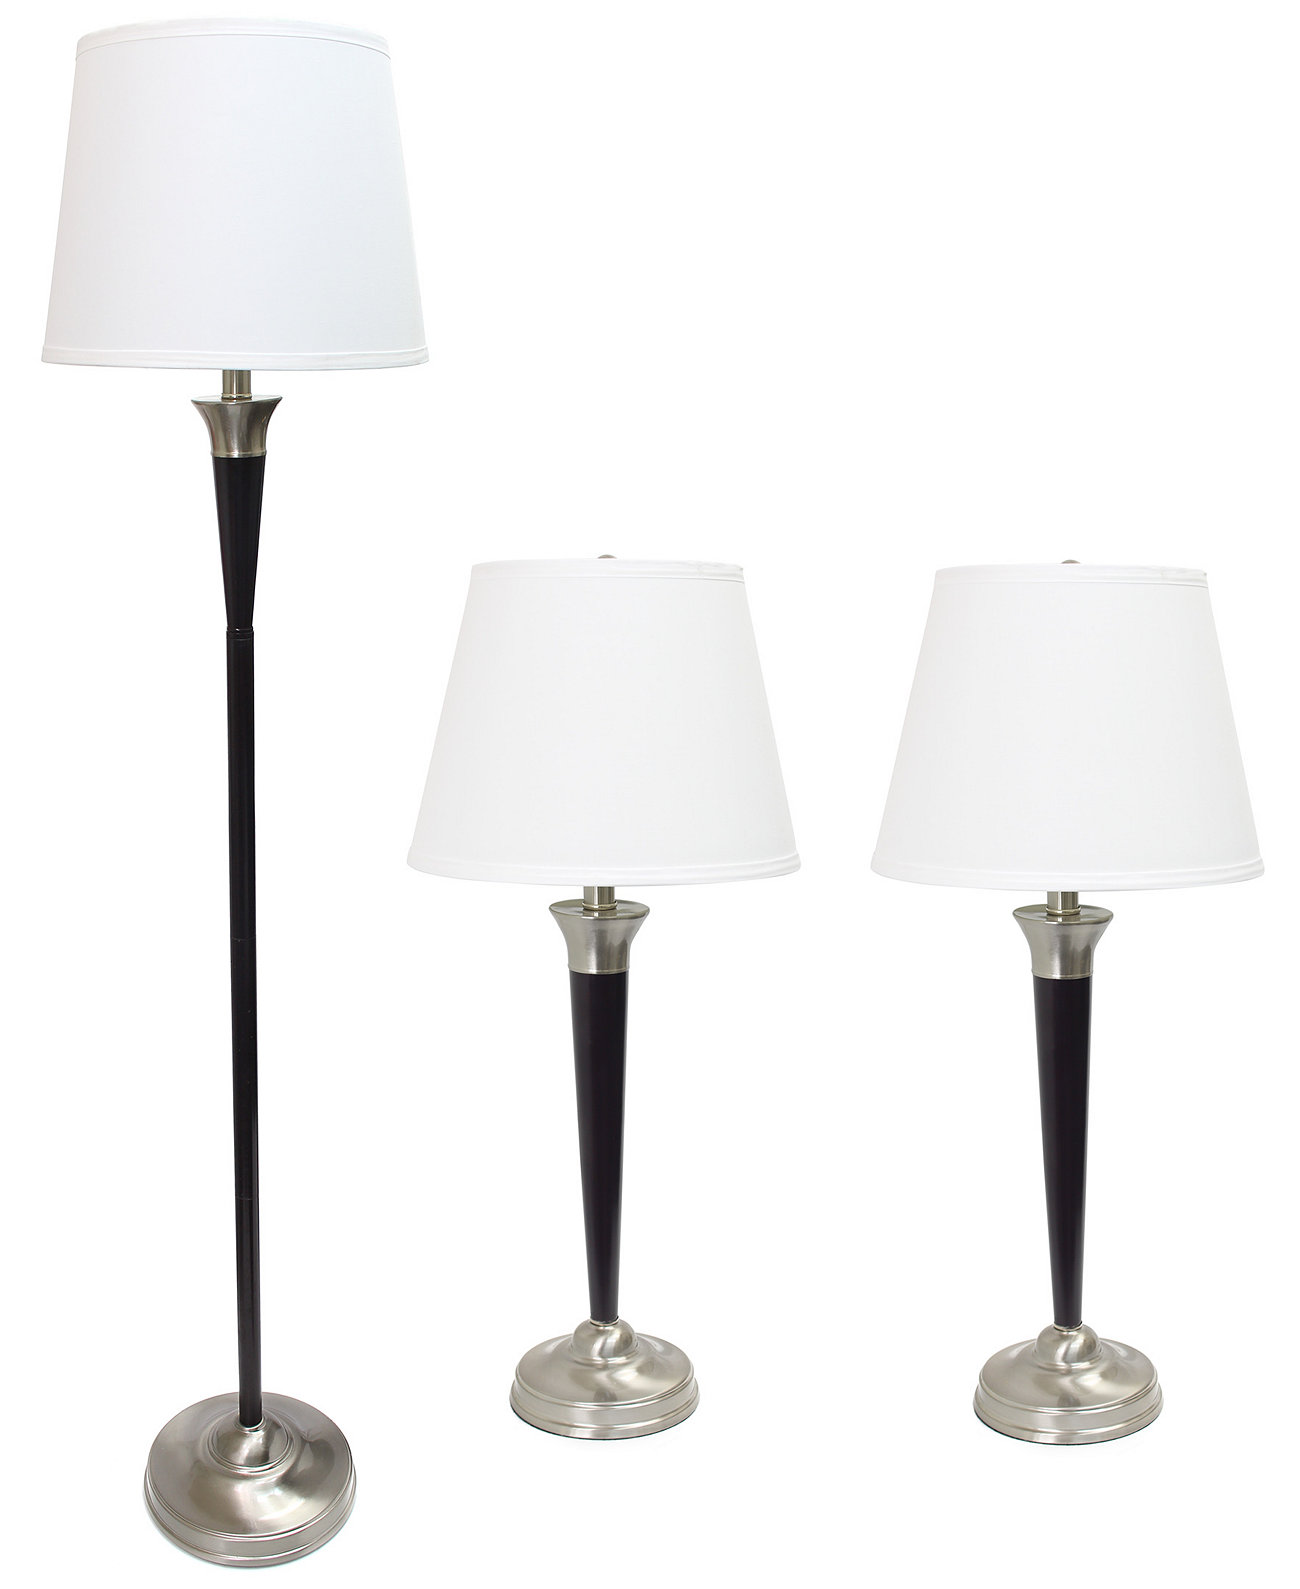 Набор из 3 ламп Elegant Designs Malbec Black и матового никеля (2 настольные лампы, 1 торшер) All The Rages